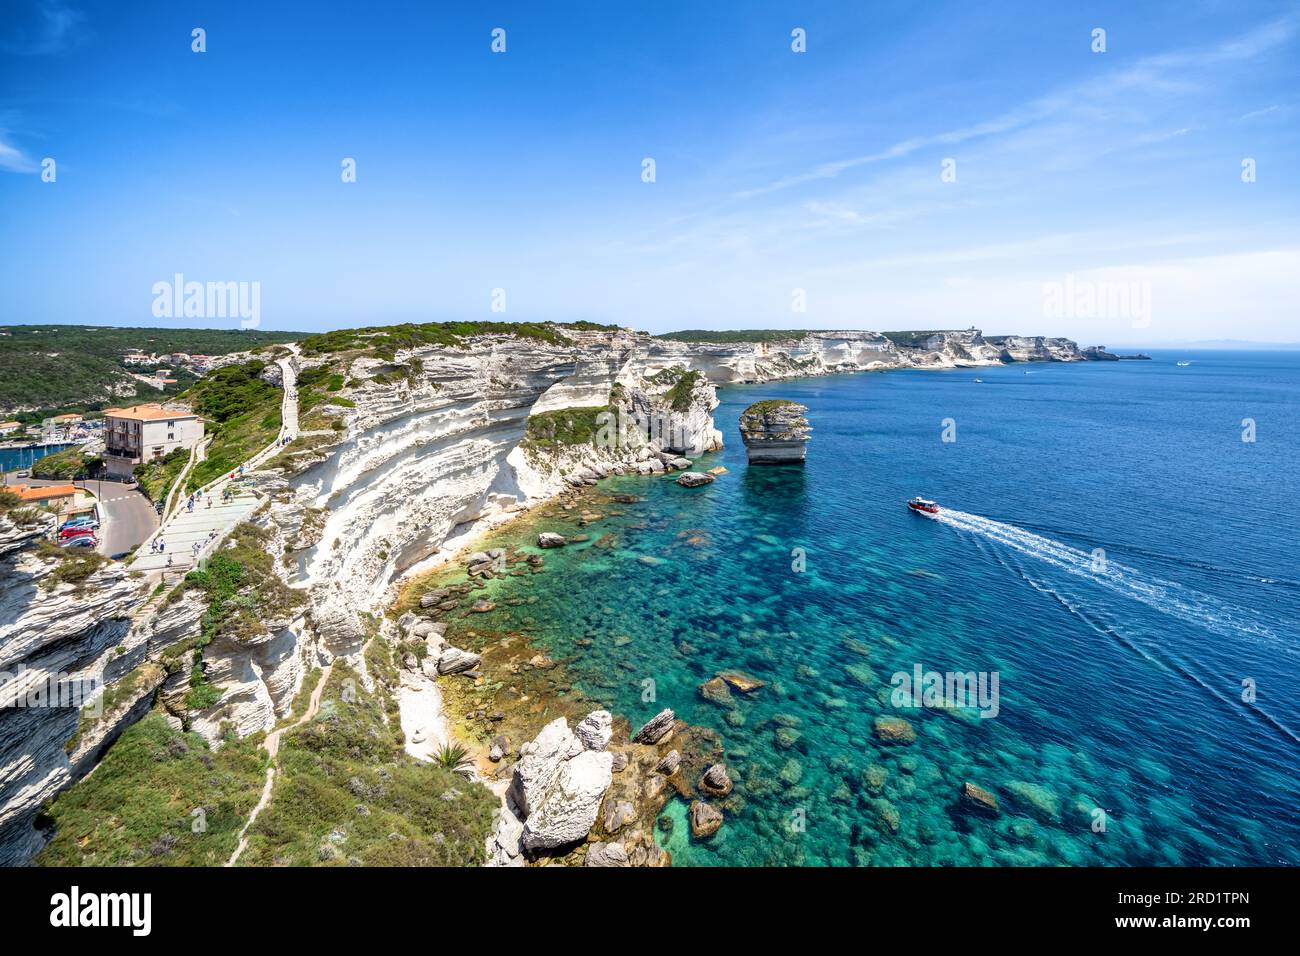 A Bonifacio, île de Corse, France Banque D'Images